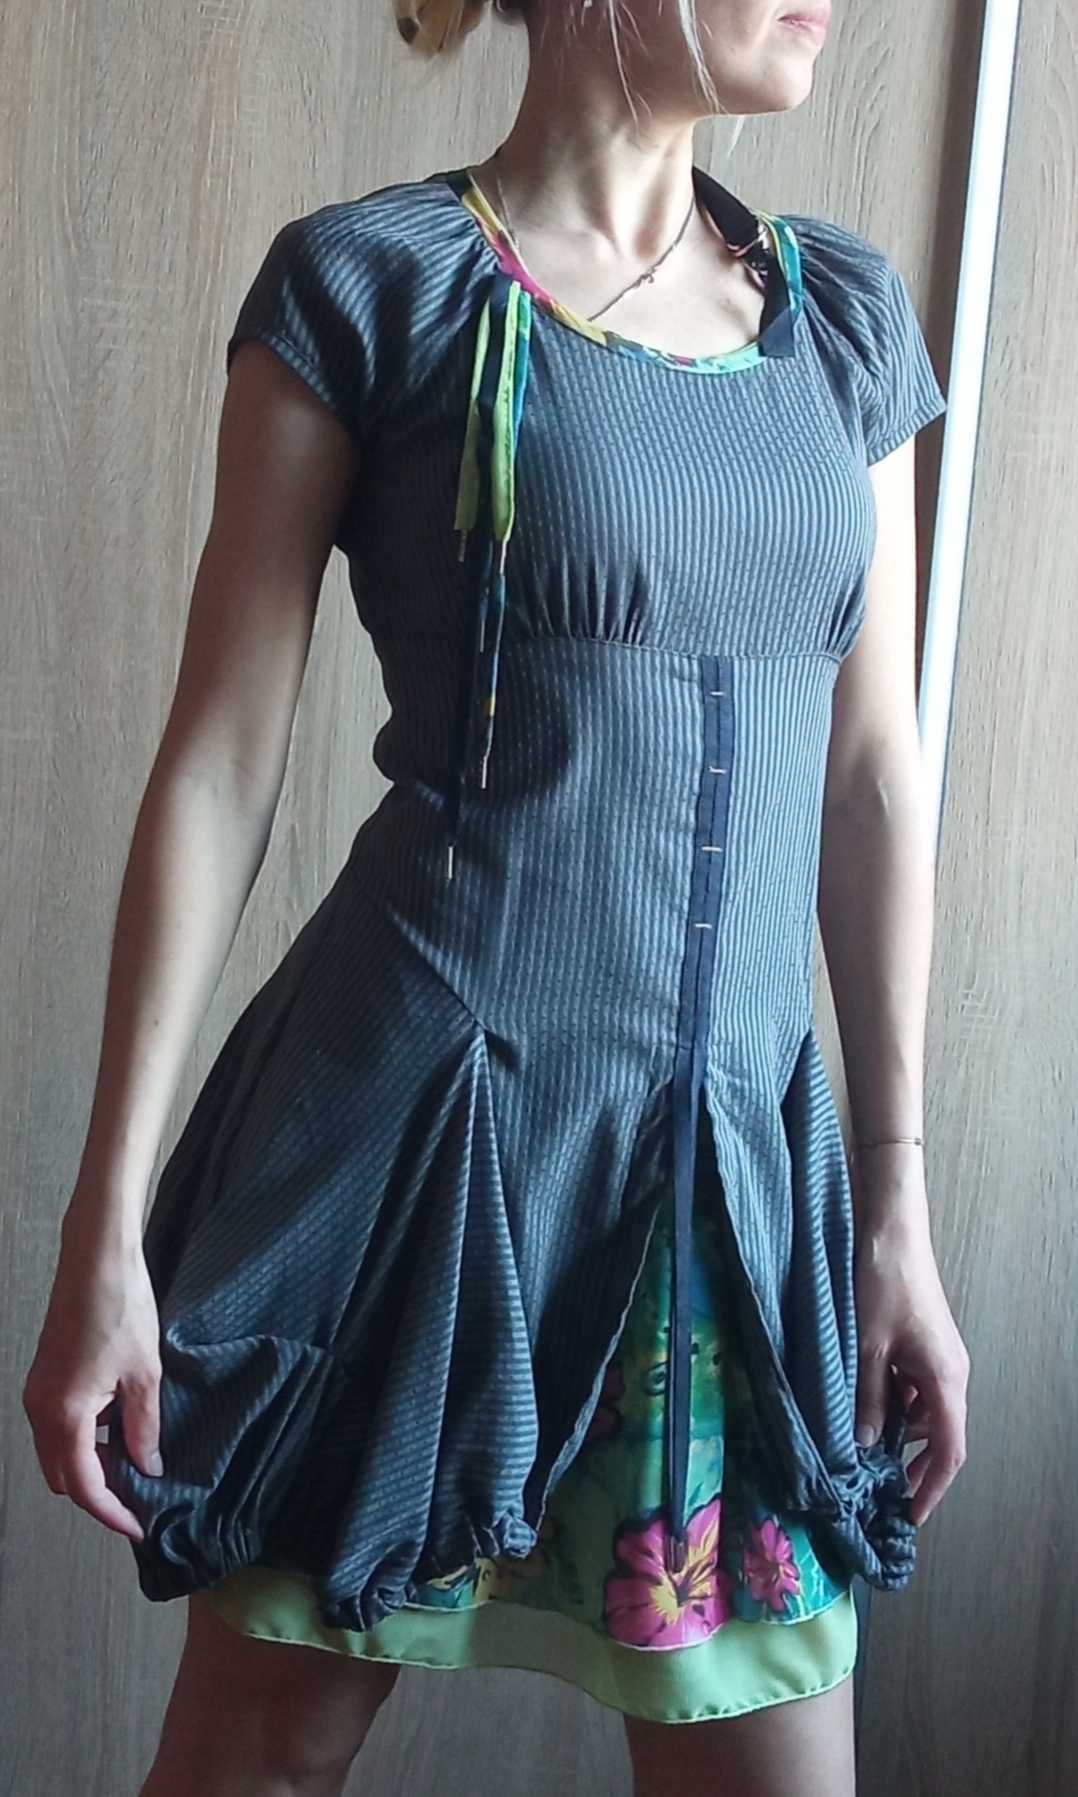 Сукня незвичного крою з сіткою Платье с необычным декором сеткой